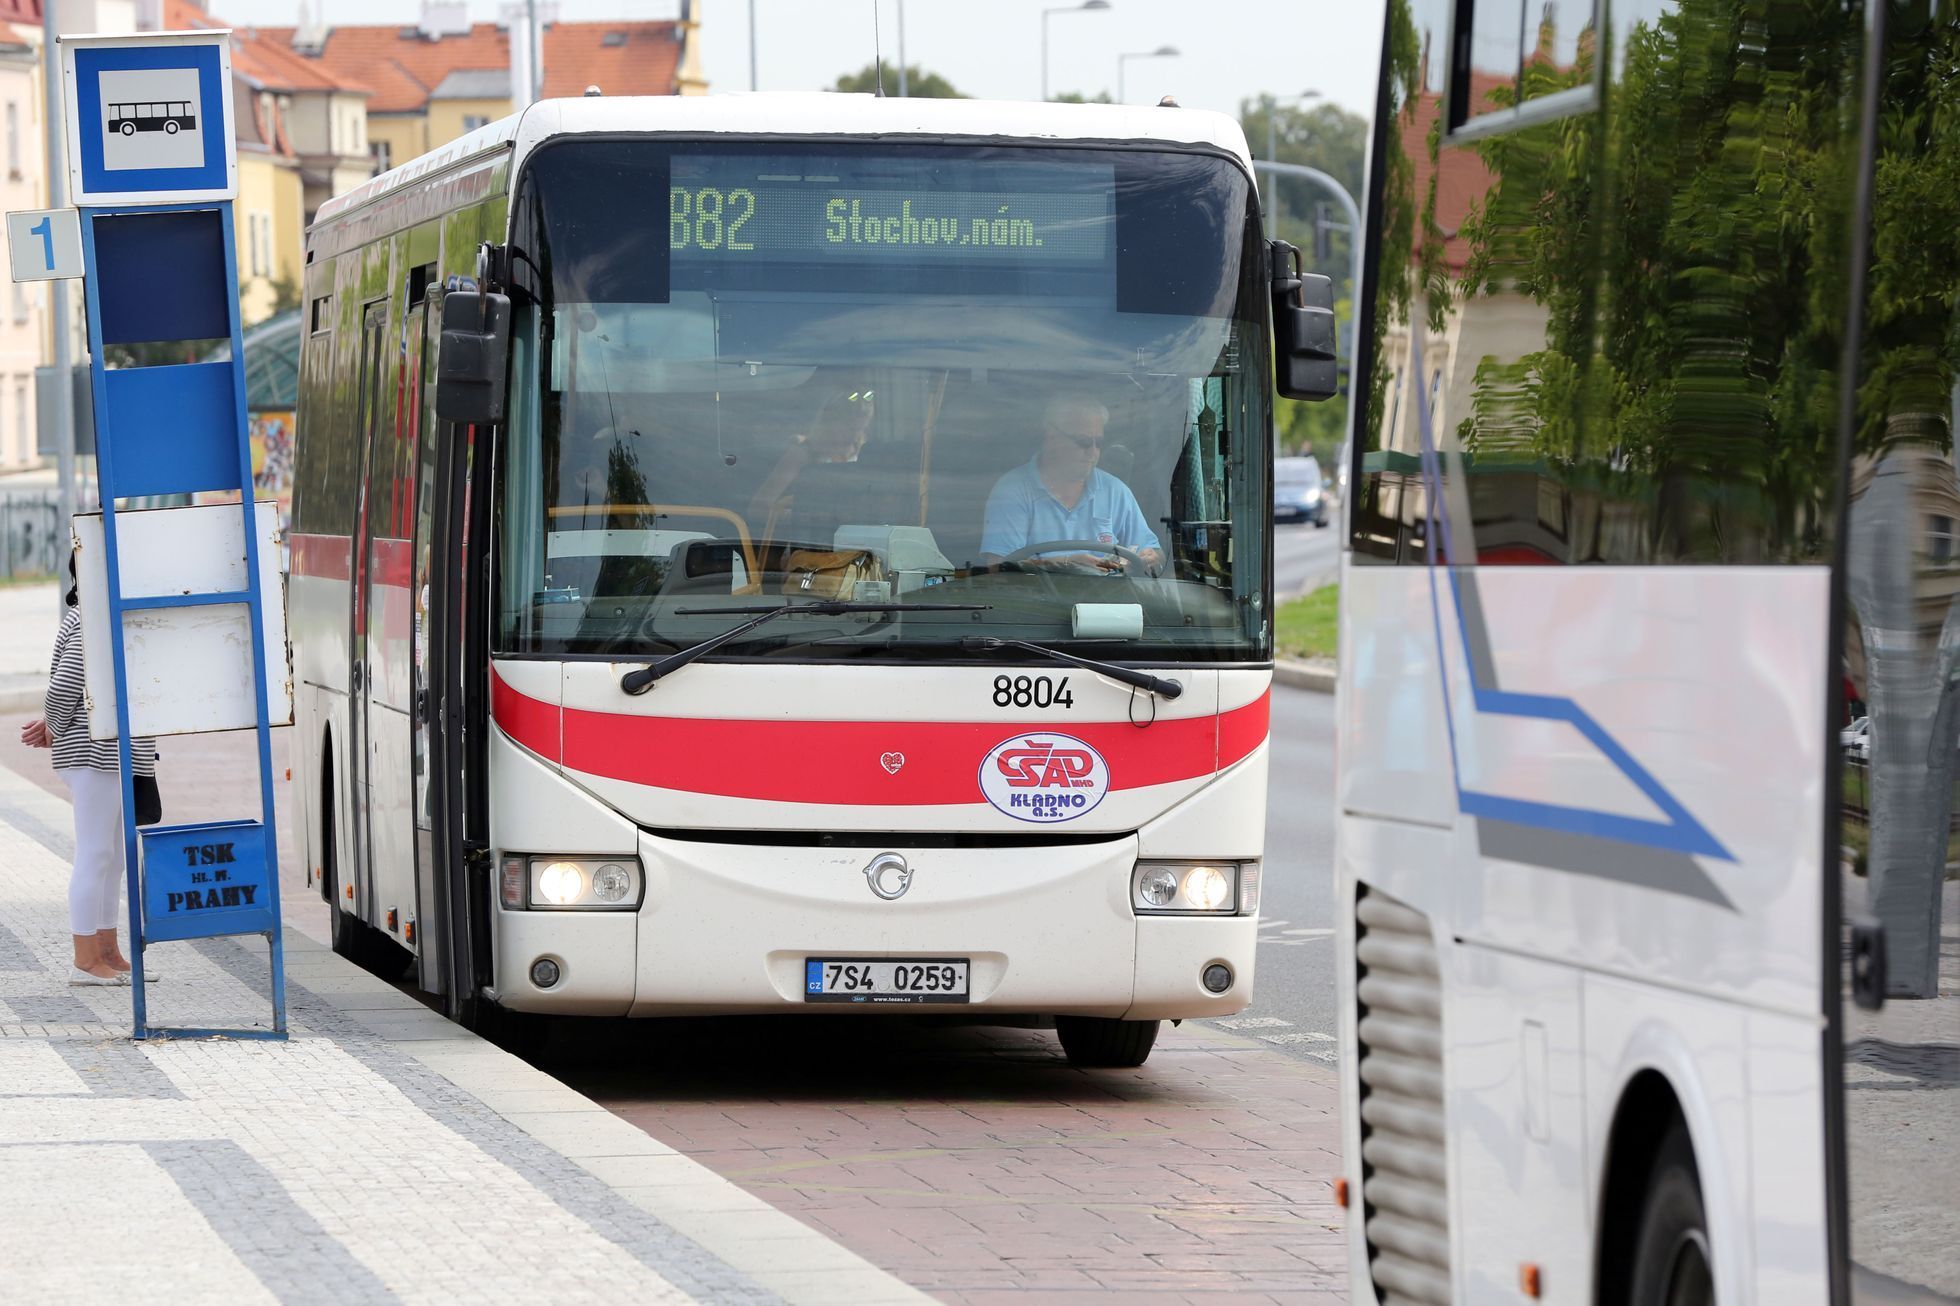 ilustrační fotografie, autobusová zastávka, linkový autobus, meziměstský autobus, ČSAD, Praha 2017